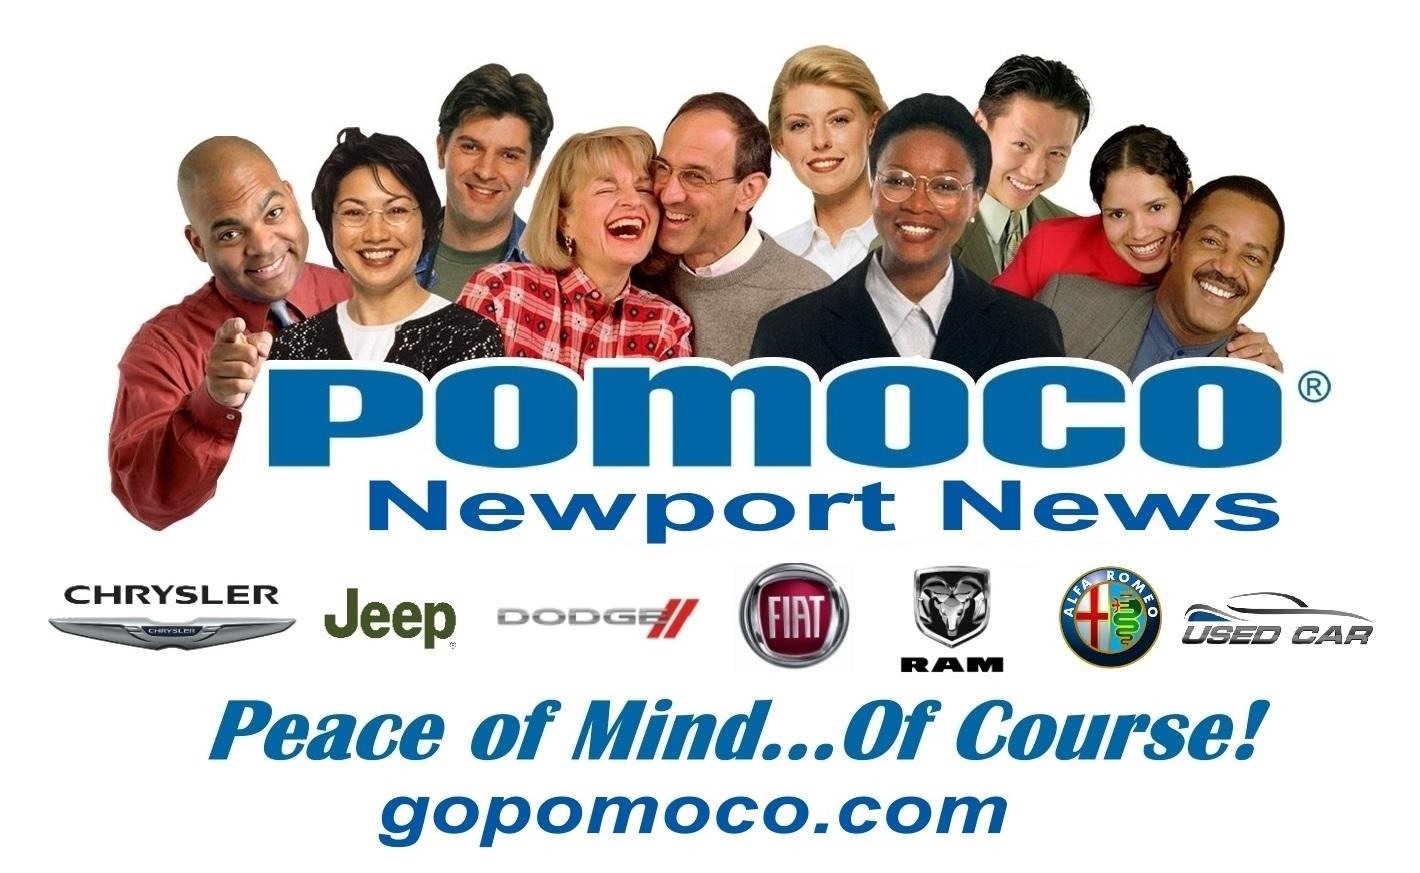 Pomoco Newport News - Newport News, VA: Read Consumer reviews, Browse